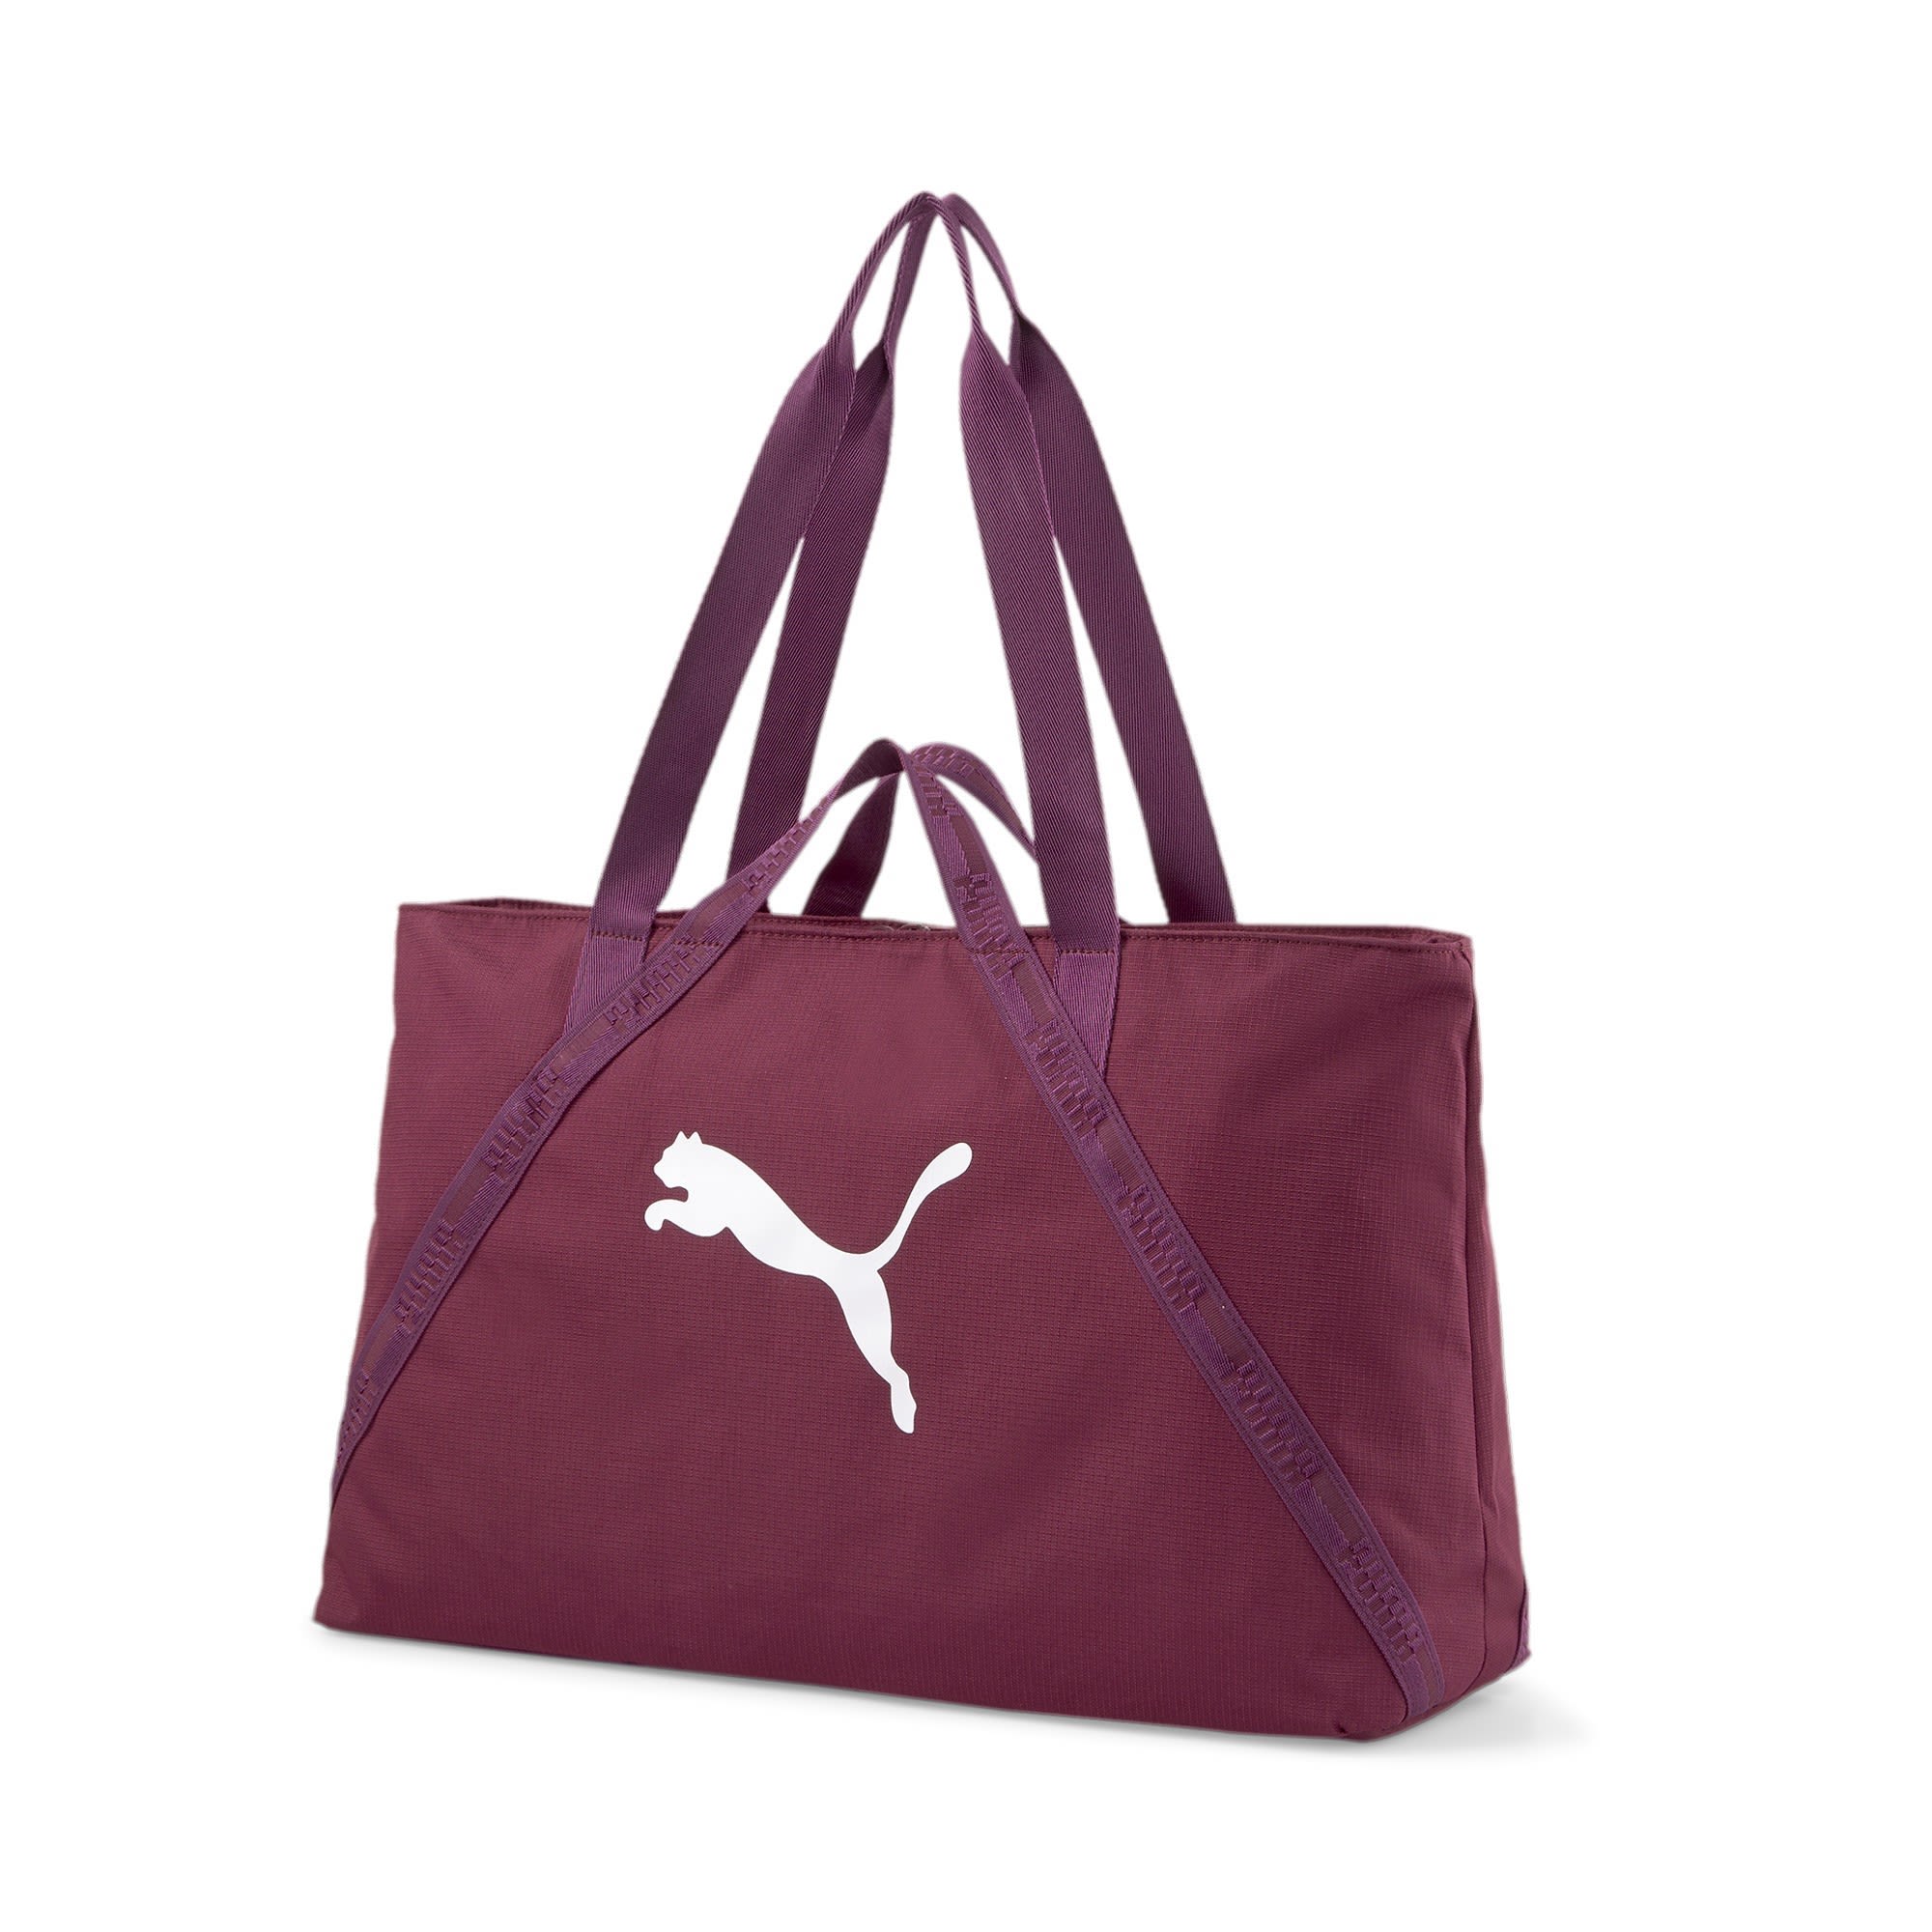 Puma AT Essentials Shopper Rot- Female Sporttaschen- Grsse 23l - Farbe Grape Wine unter Puma